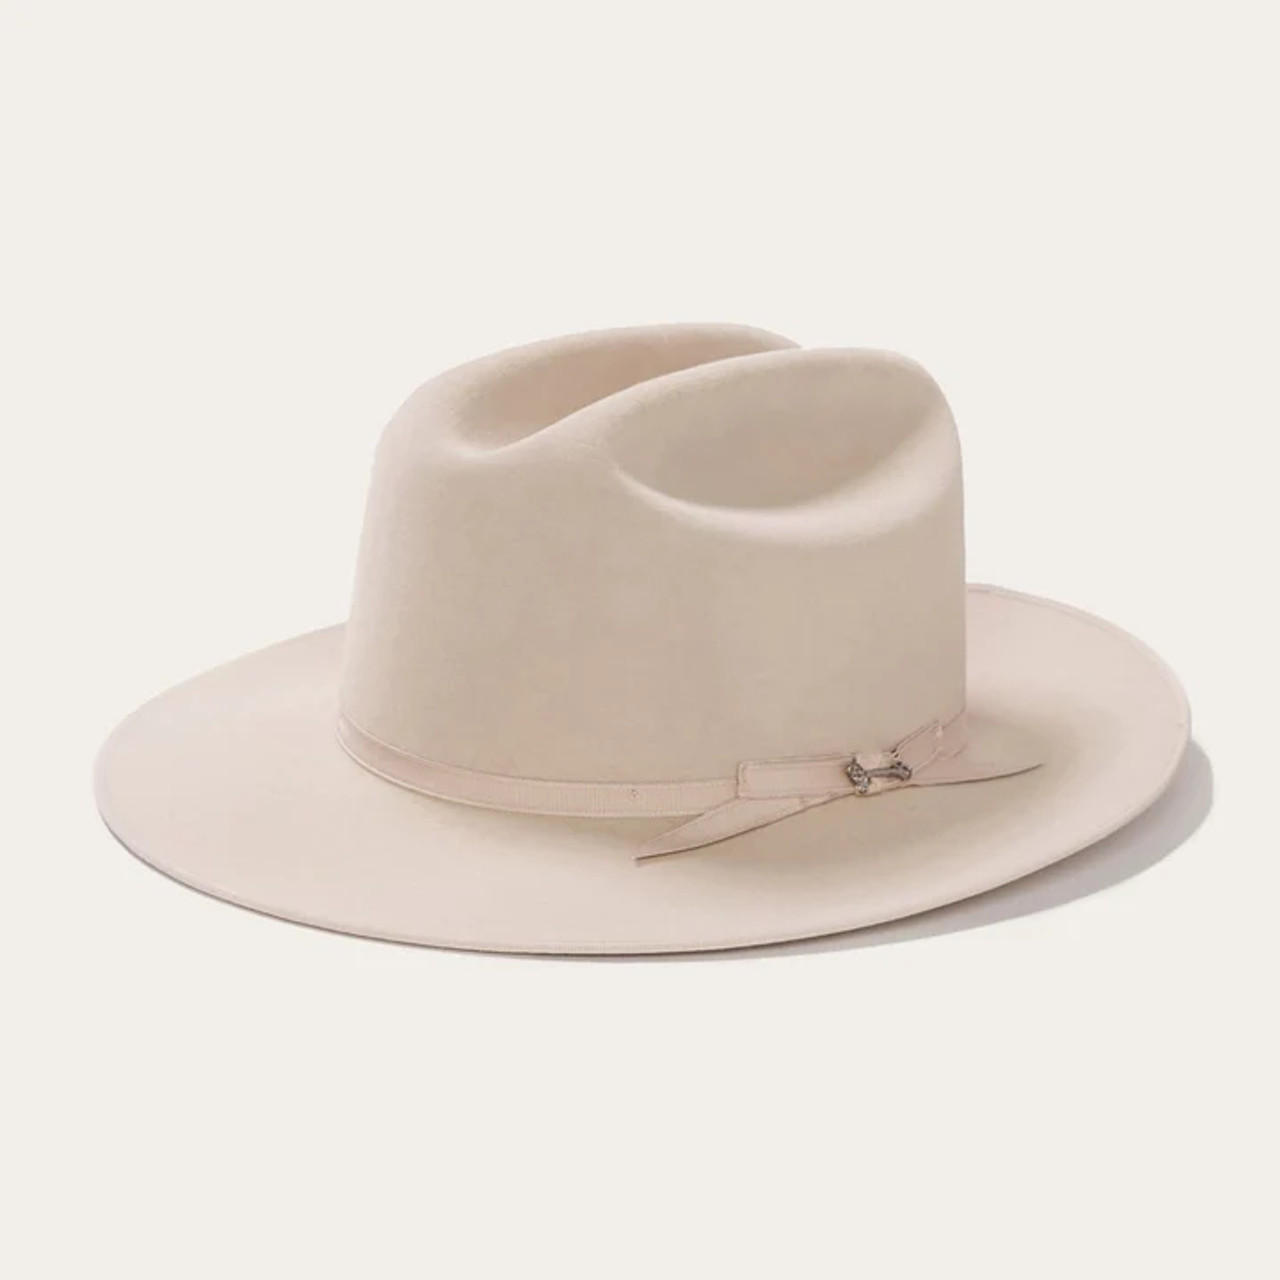 Stetson Open Road Silverbelly 6X Fur Felt Western Hat